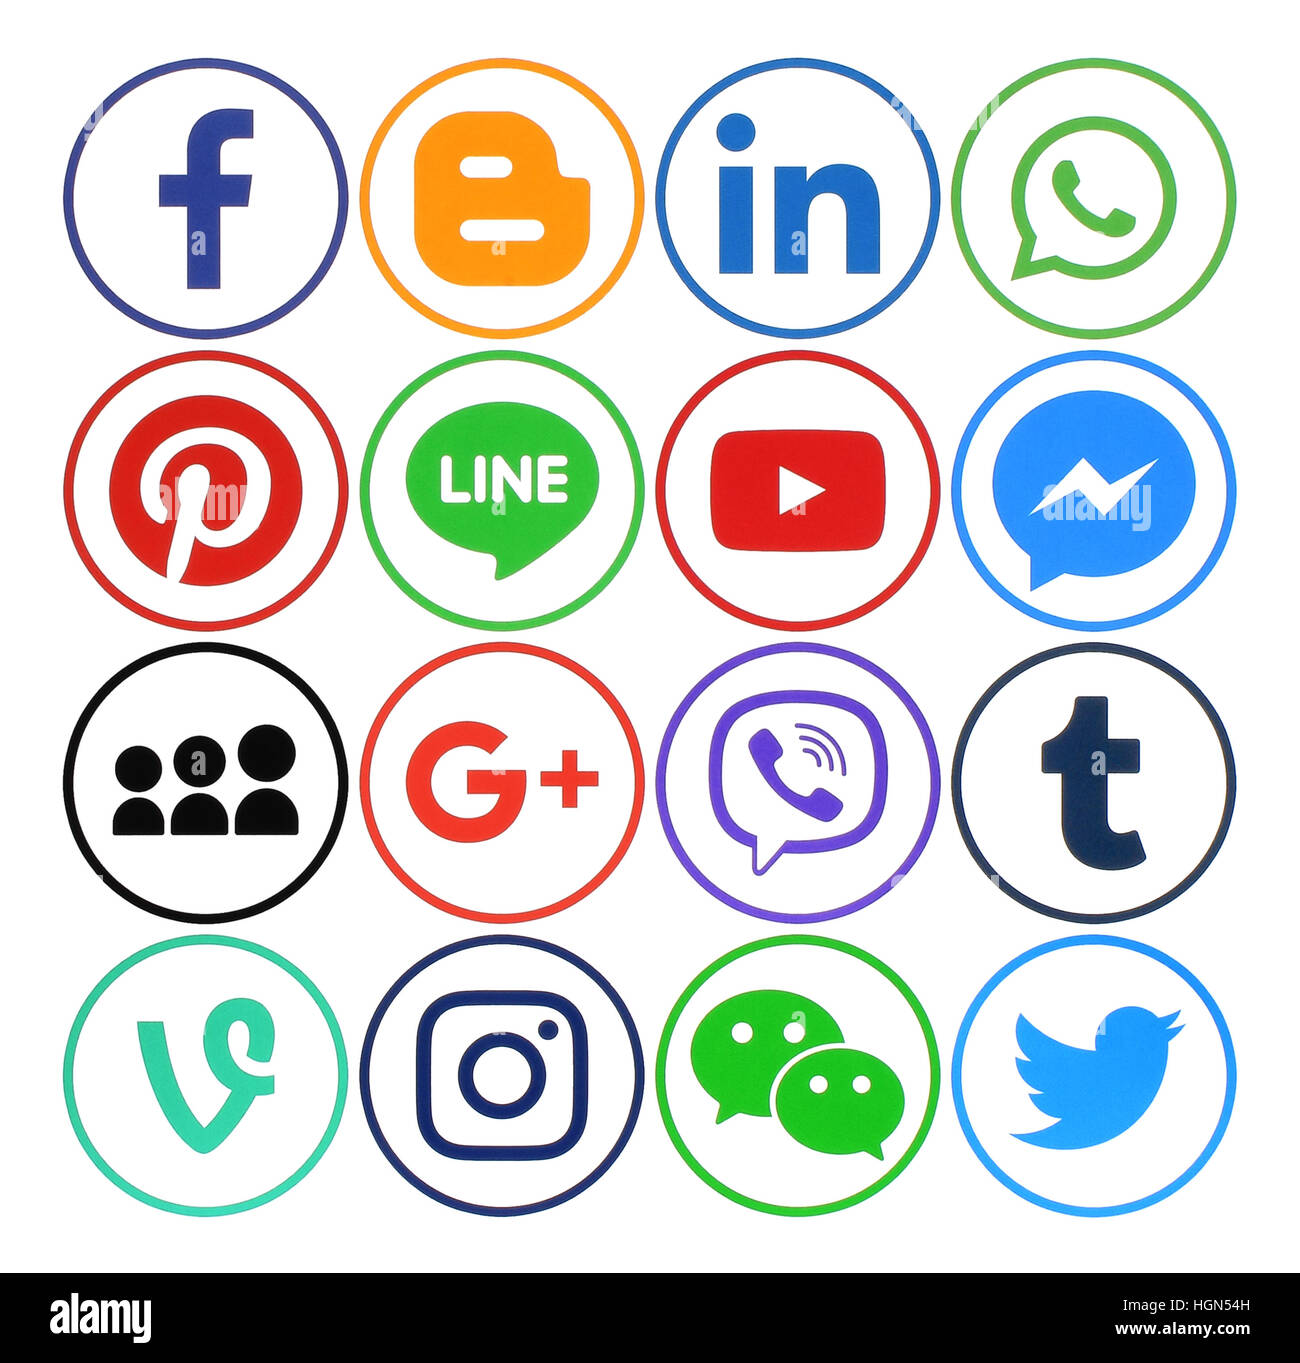 Kiev, Ukraine - Décembre 05, 2016 : Collection de médias sociaux populaires icônes ronde imprimée sur du papier : Facebook, Twitter, Google Plus, Instagram, Pintere Banque D'Images